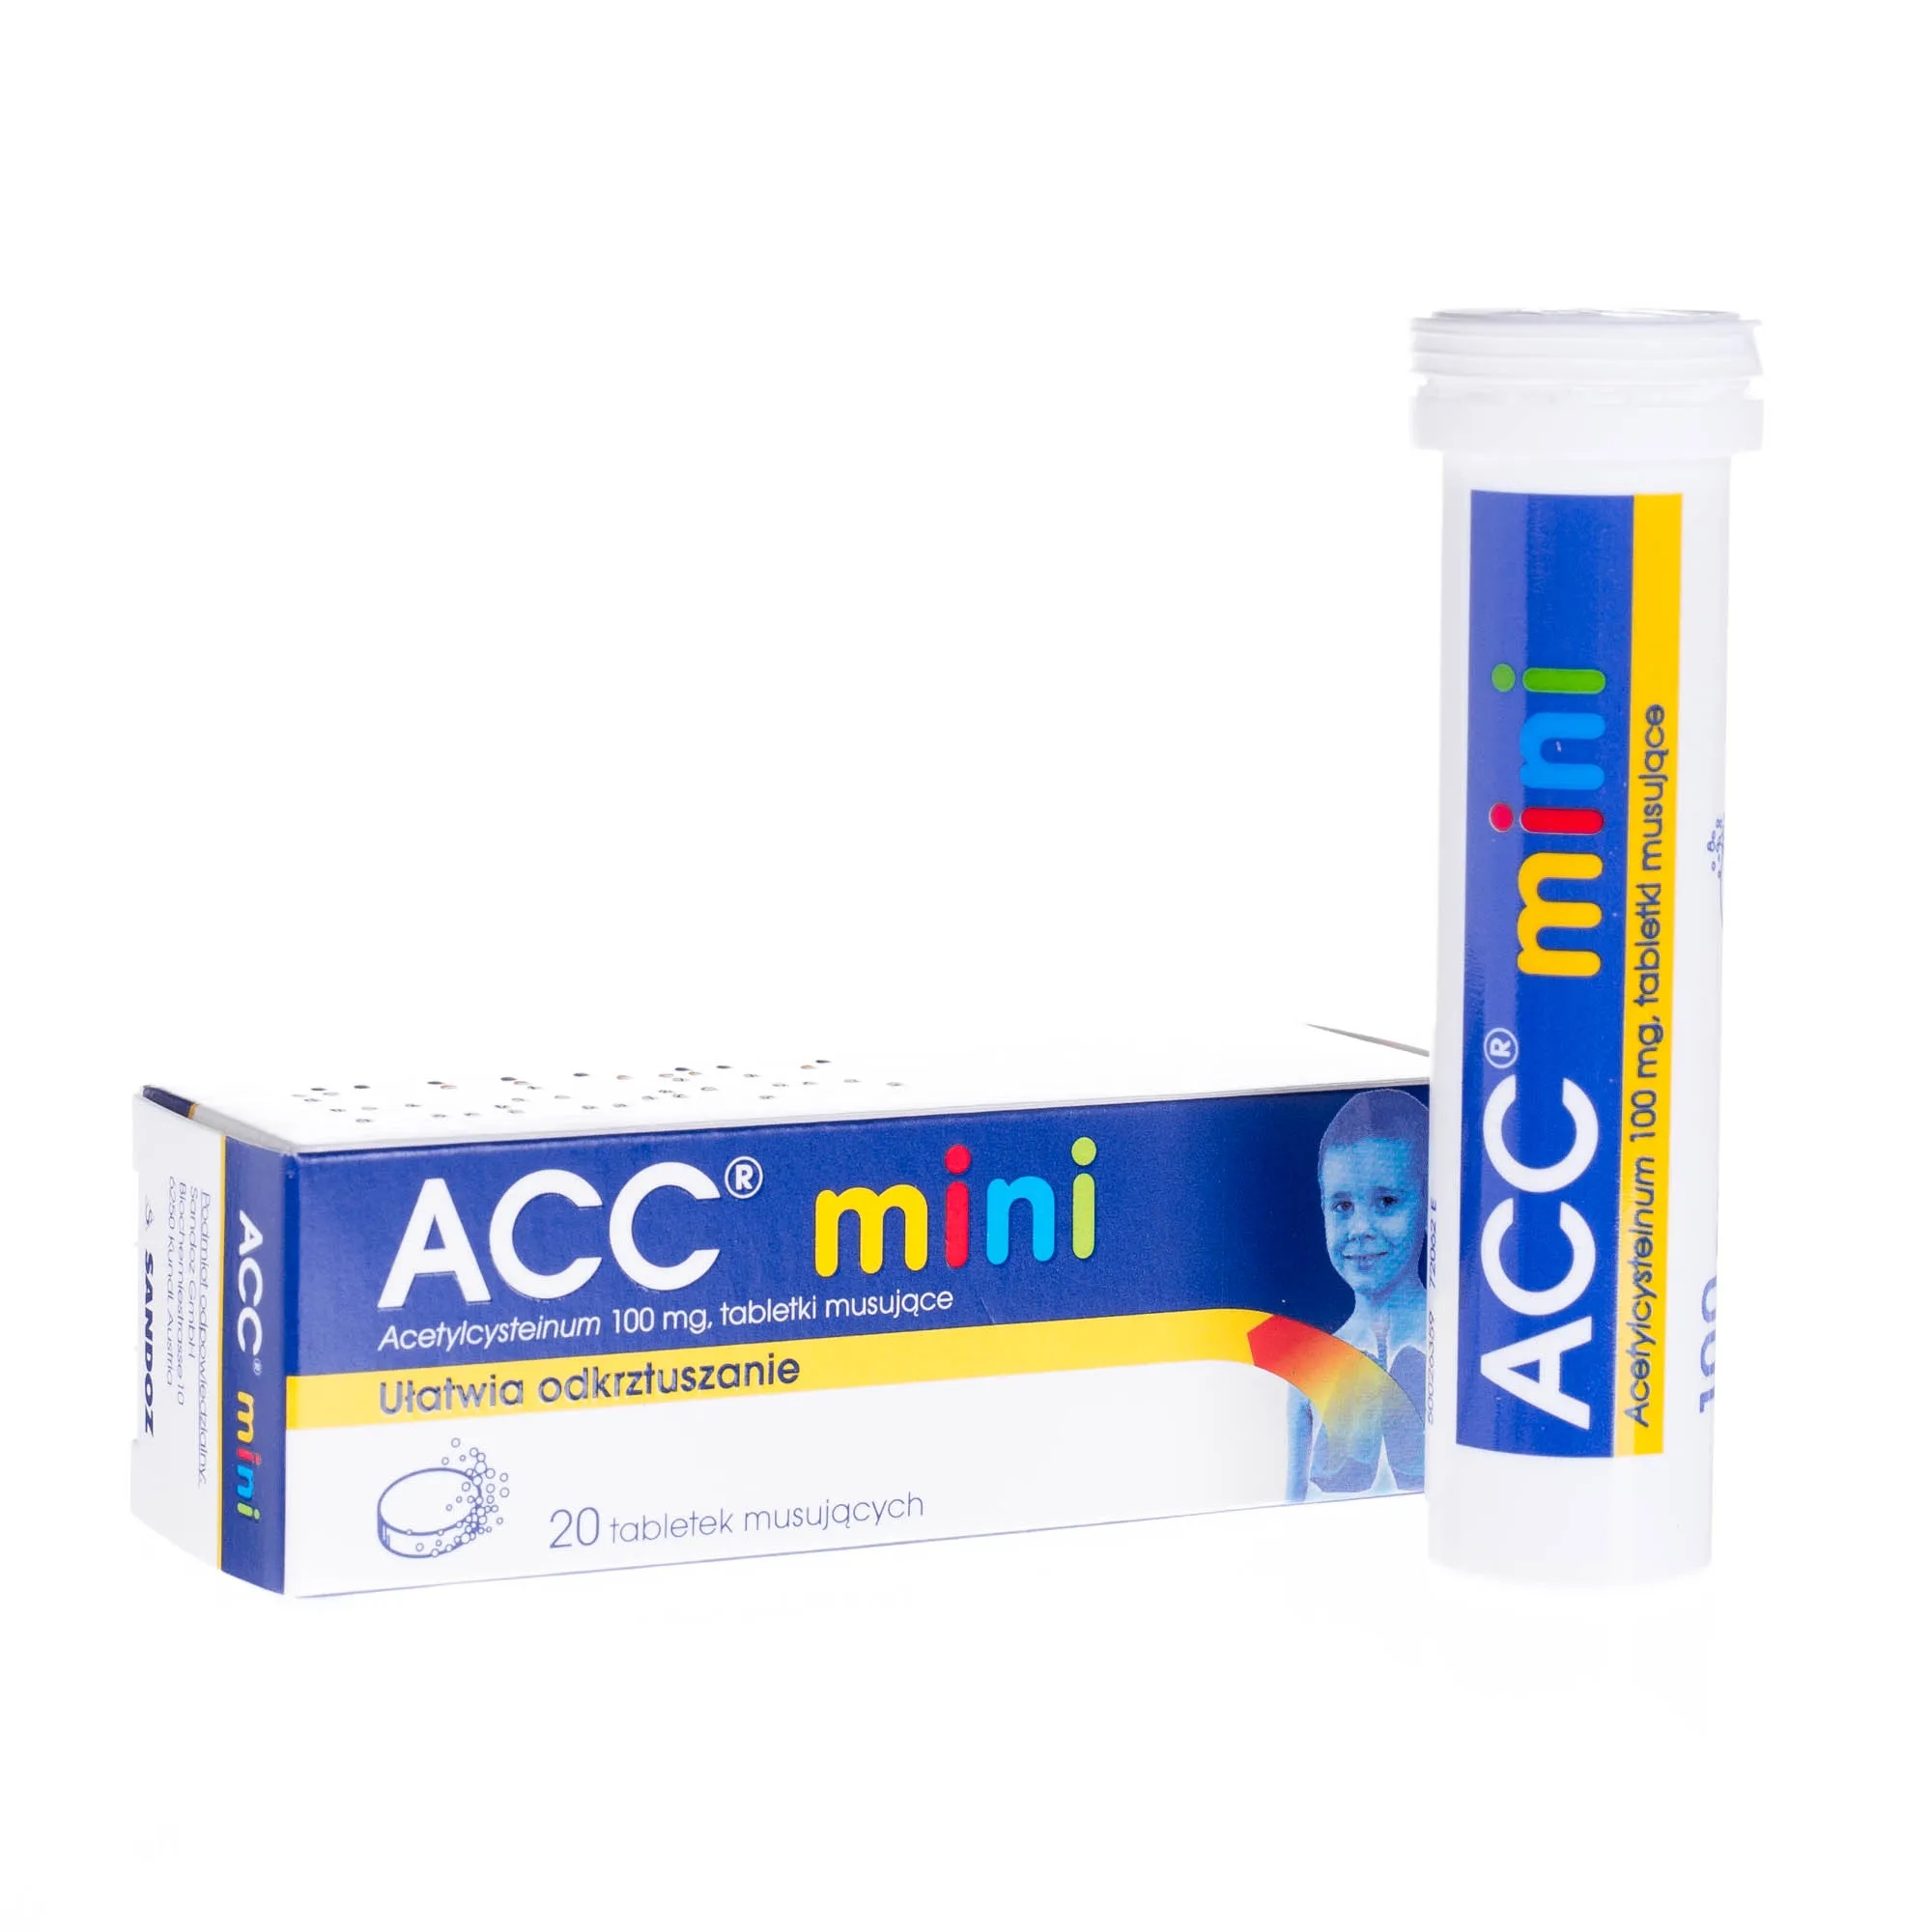 ACC mini, 100 mg, 20 tabletek musujących